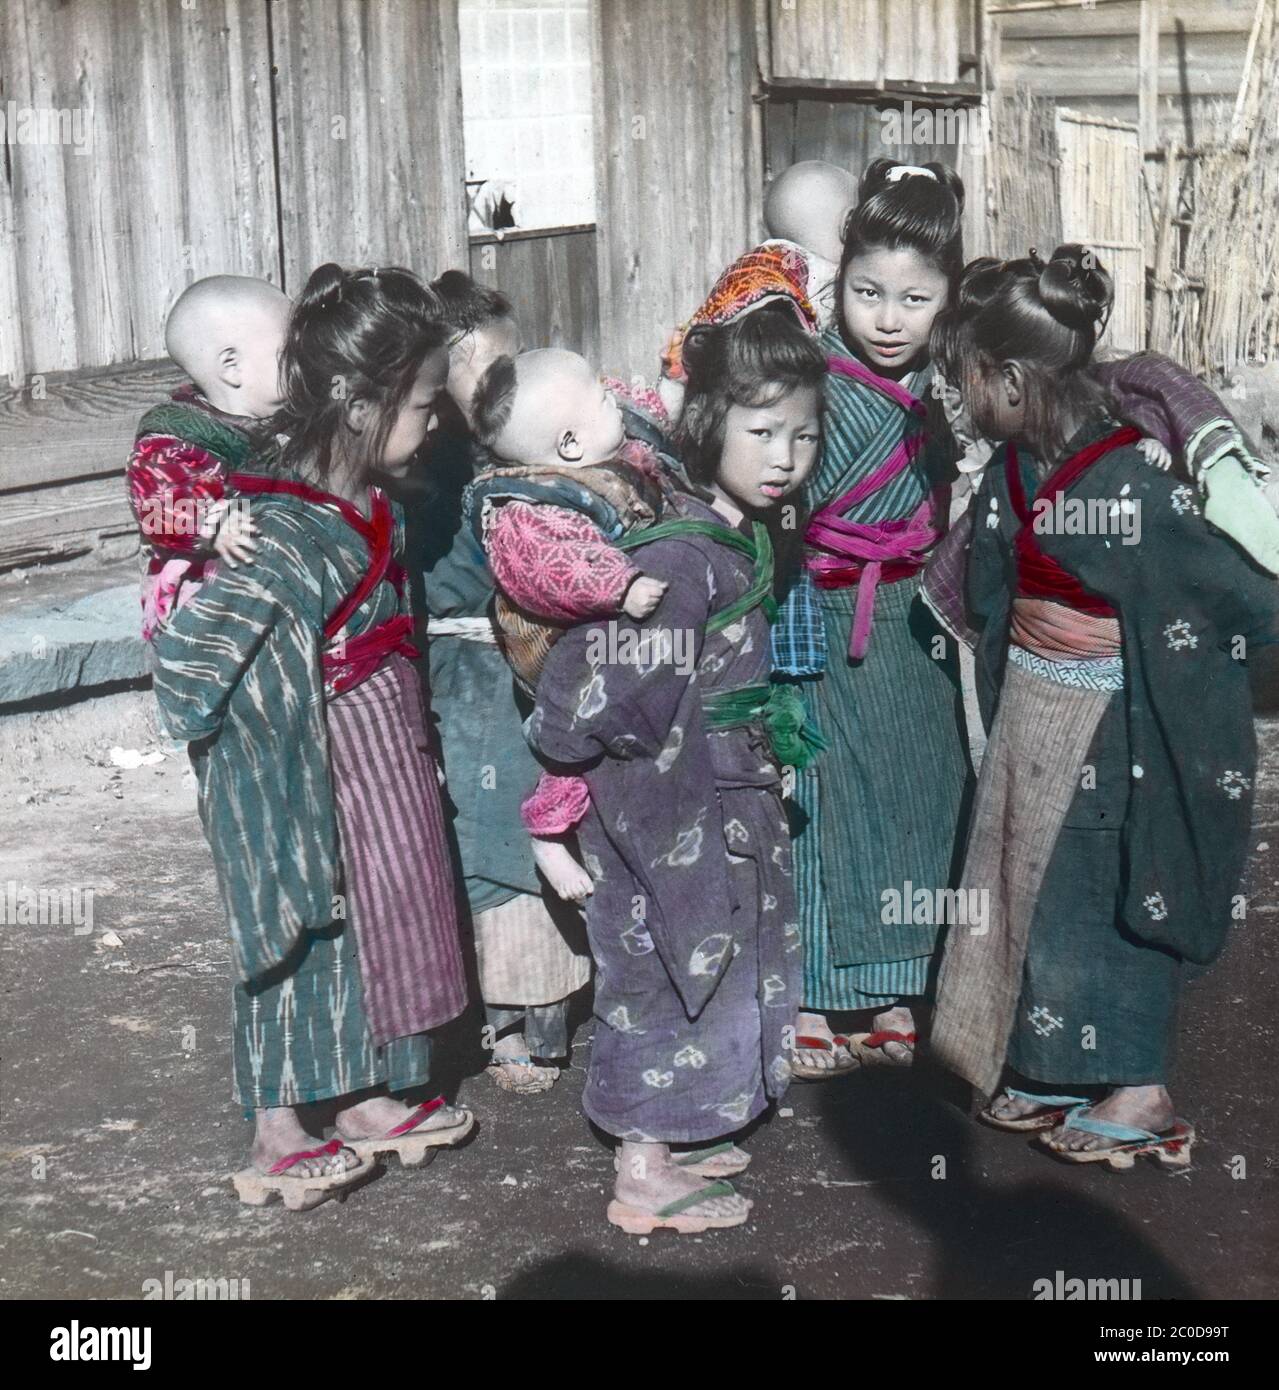 [ 1900s Japon - jeunes aides infirmières japonaises ] — UN groupe de komori sur une route de campagne au début des années 1900. Les Komori étaient de jeunes filles de familles pauvres qui ont été embauchées chaque année pour aider les mères de classe moyenne et supérieure à prendre soin de leur bébé. En plus de transporter le bébé, le komori aiderait également un peu le travail de ménage. Komori a reçu de la nourriture, de l'hébergement, des vêtements et parfois de l'argent. diapositive en verre vintage du xxe siècle. Banque D'Images